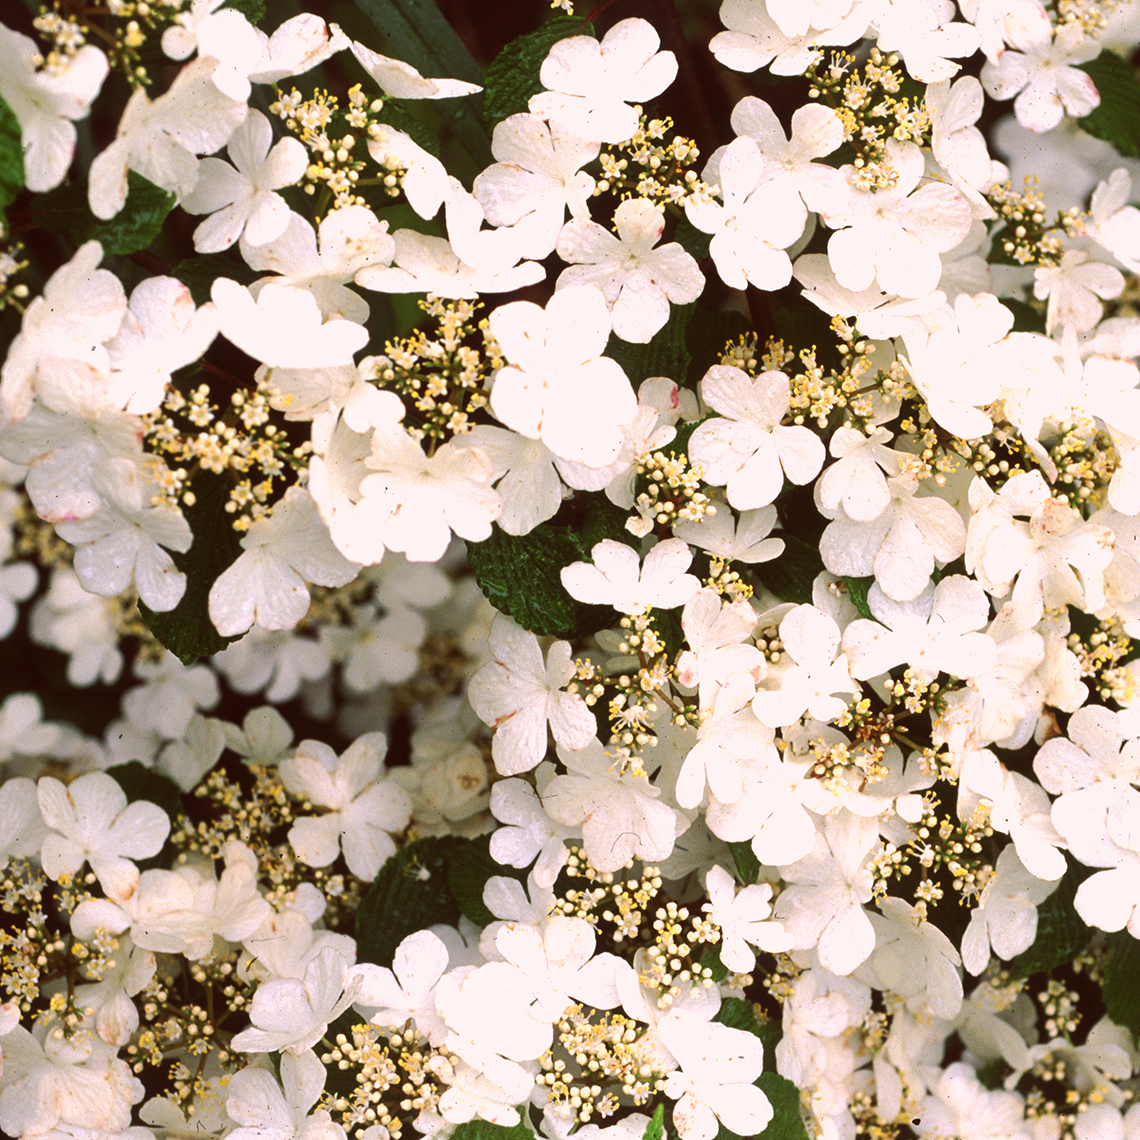 Closeup of the white lacecap flowers of Summer Snowflake viburnum